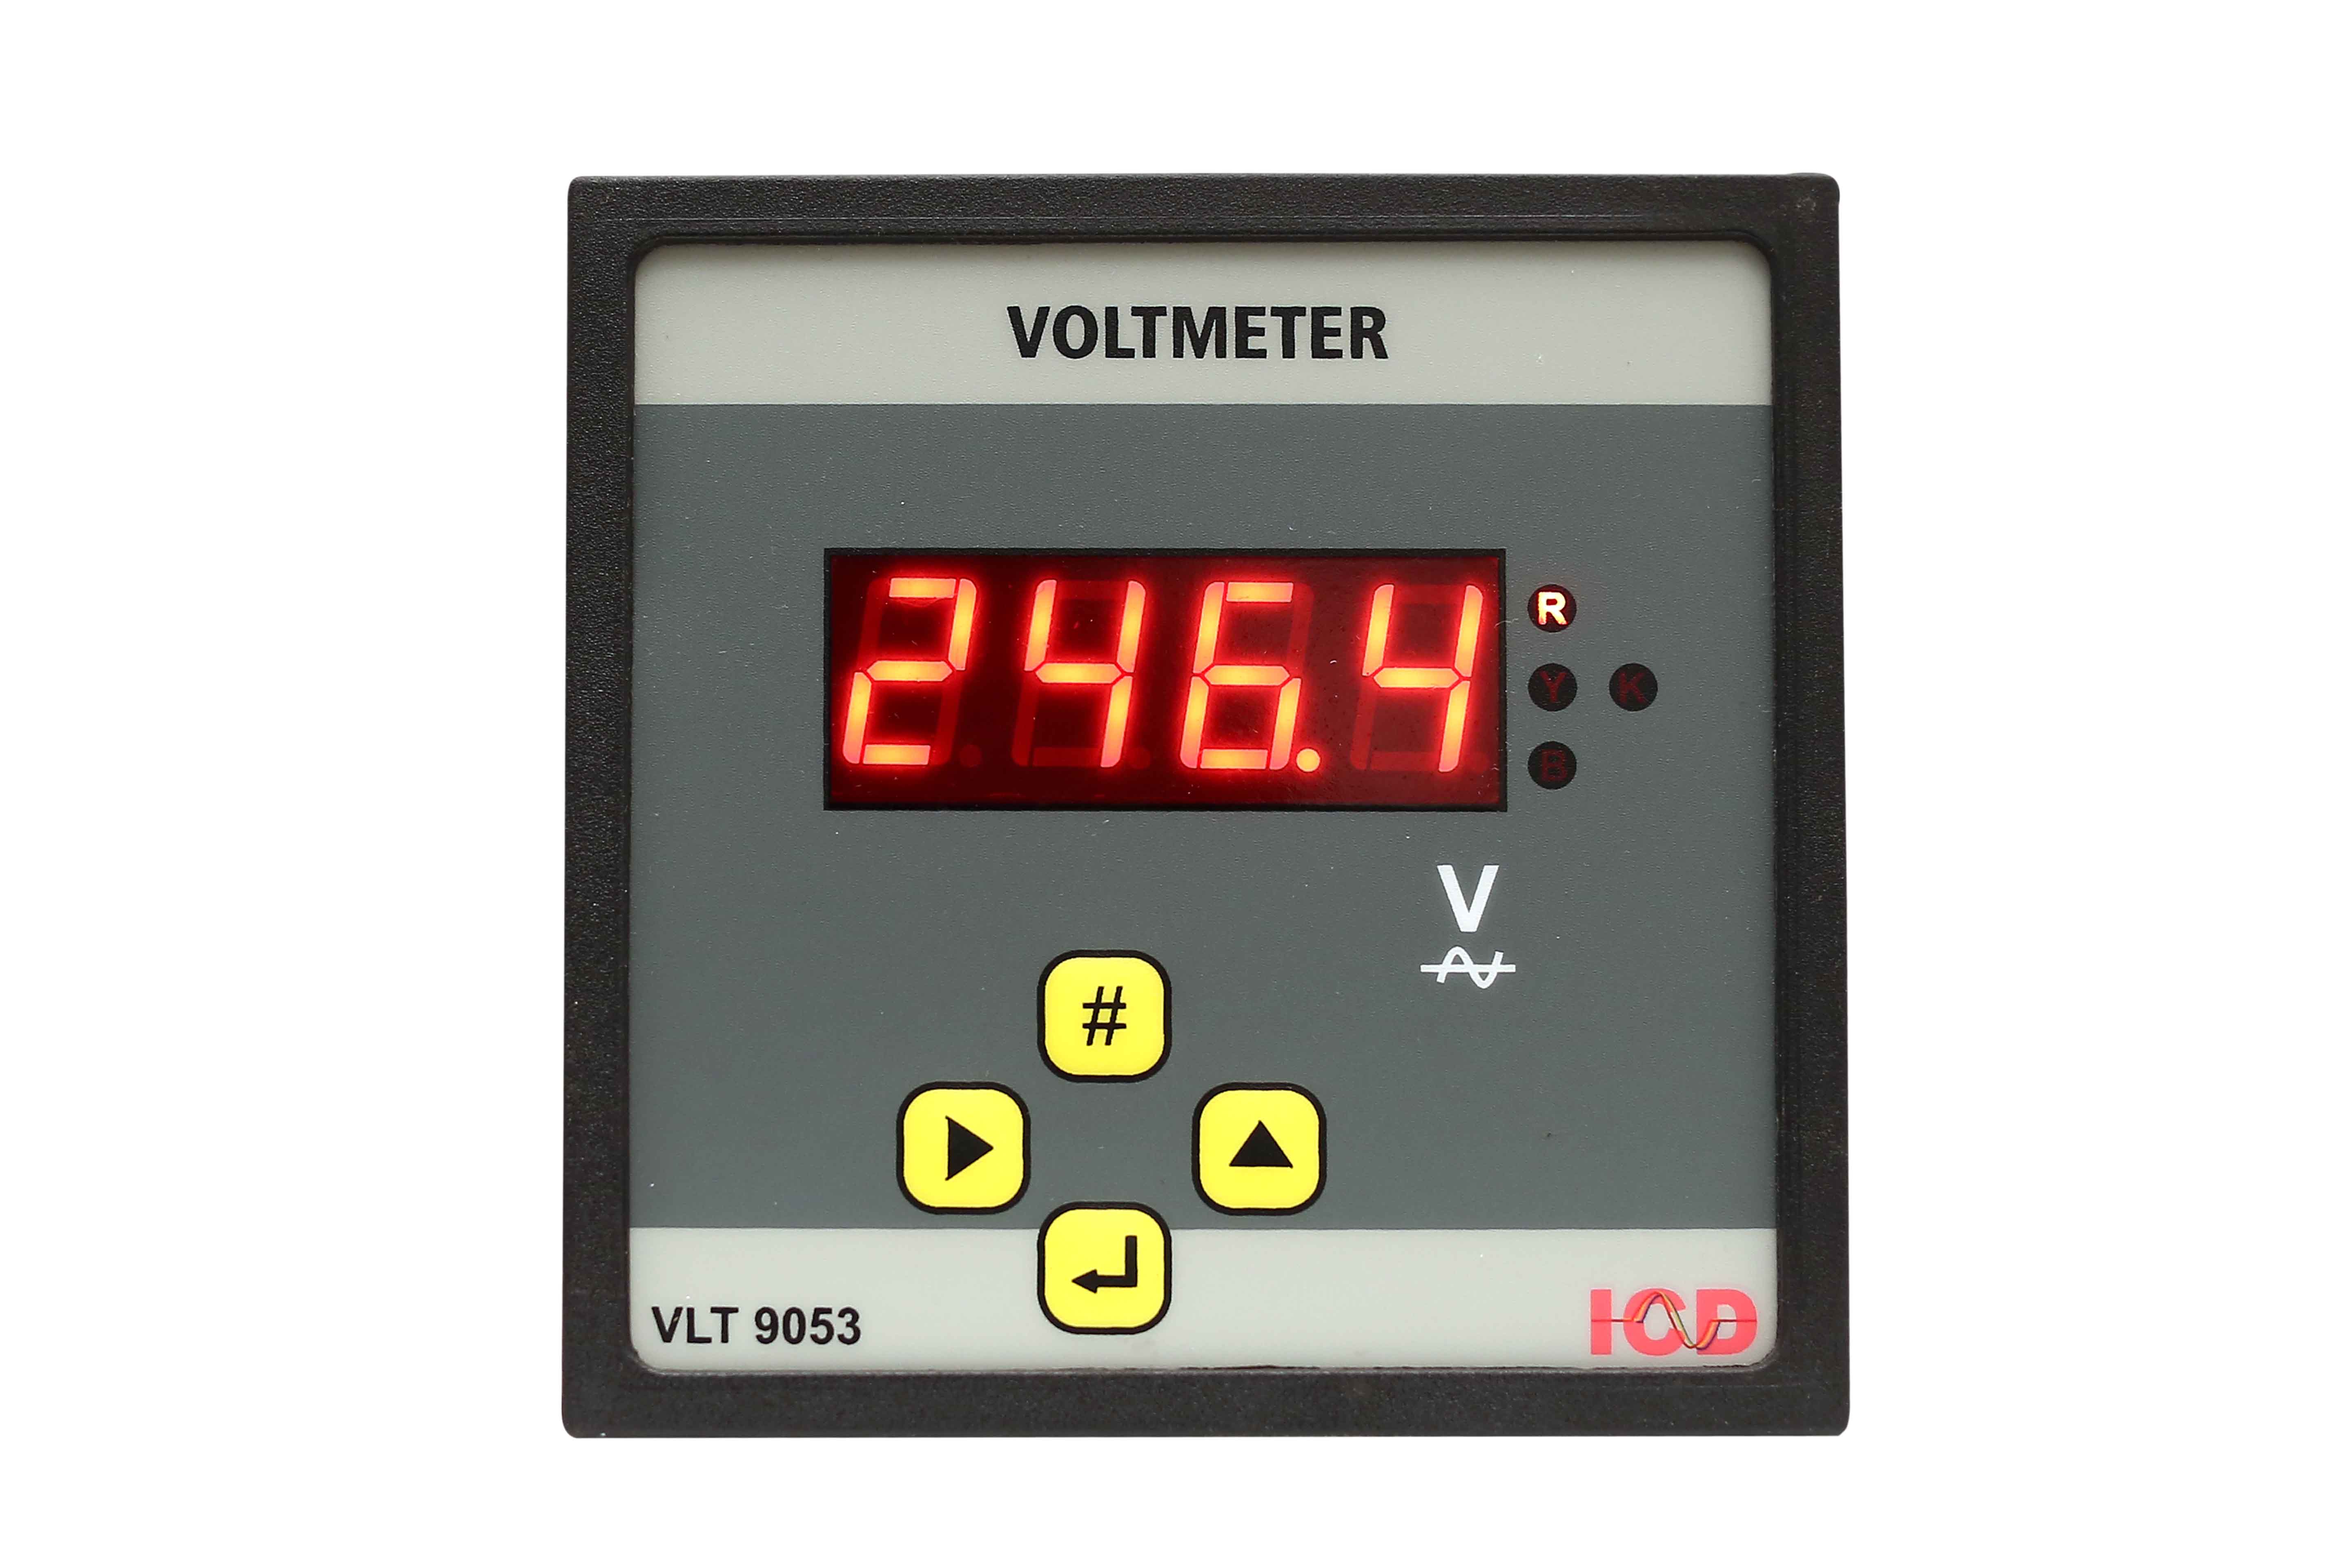 ICD - Digital Voltmeter Model No: VLT 9053